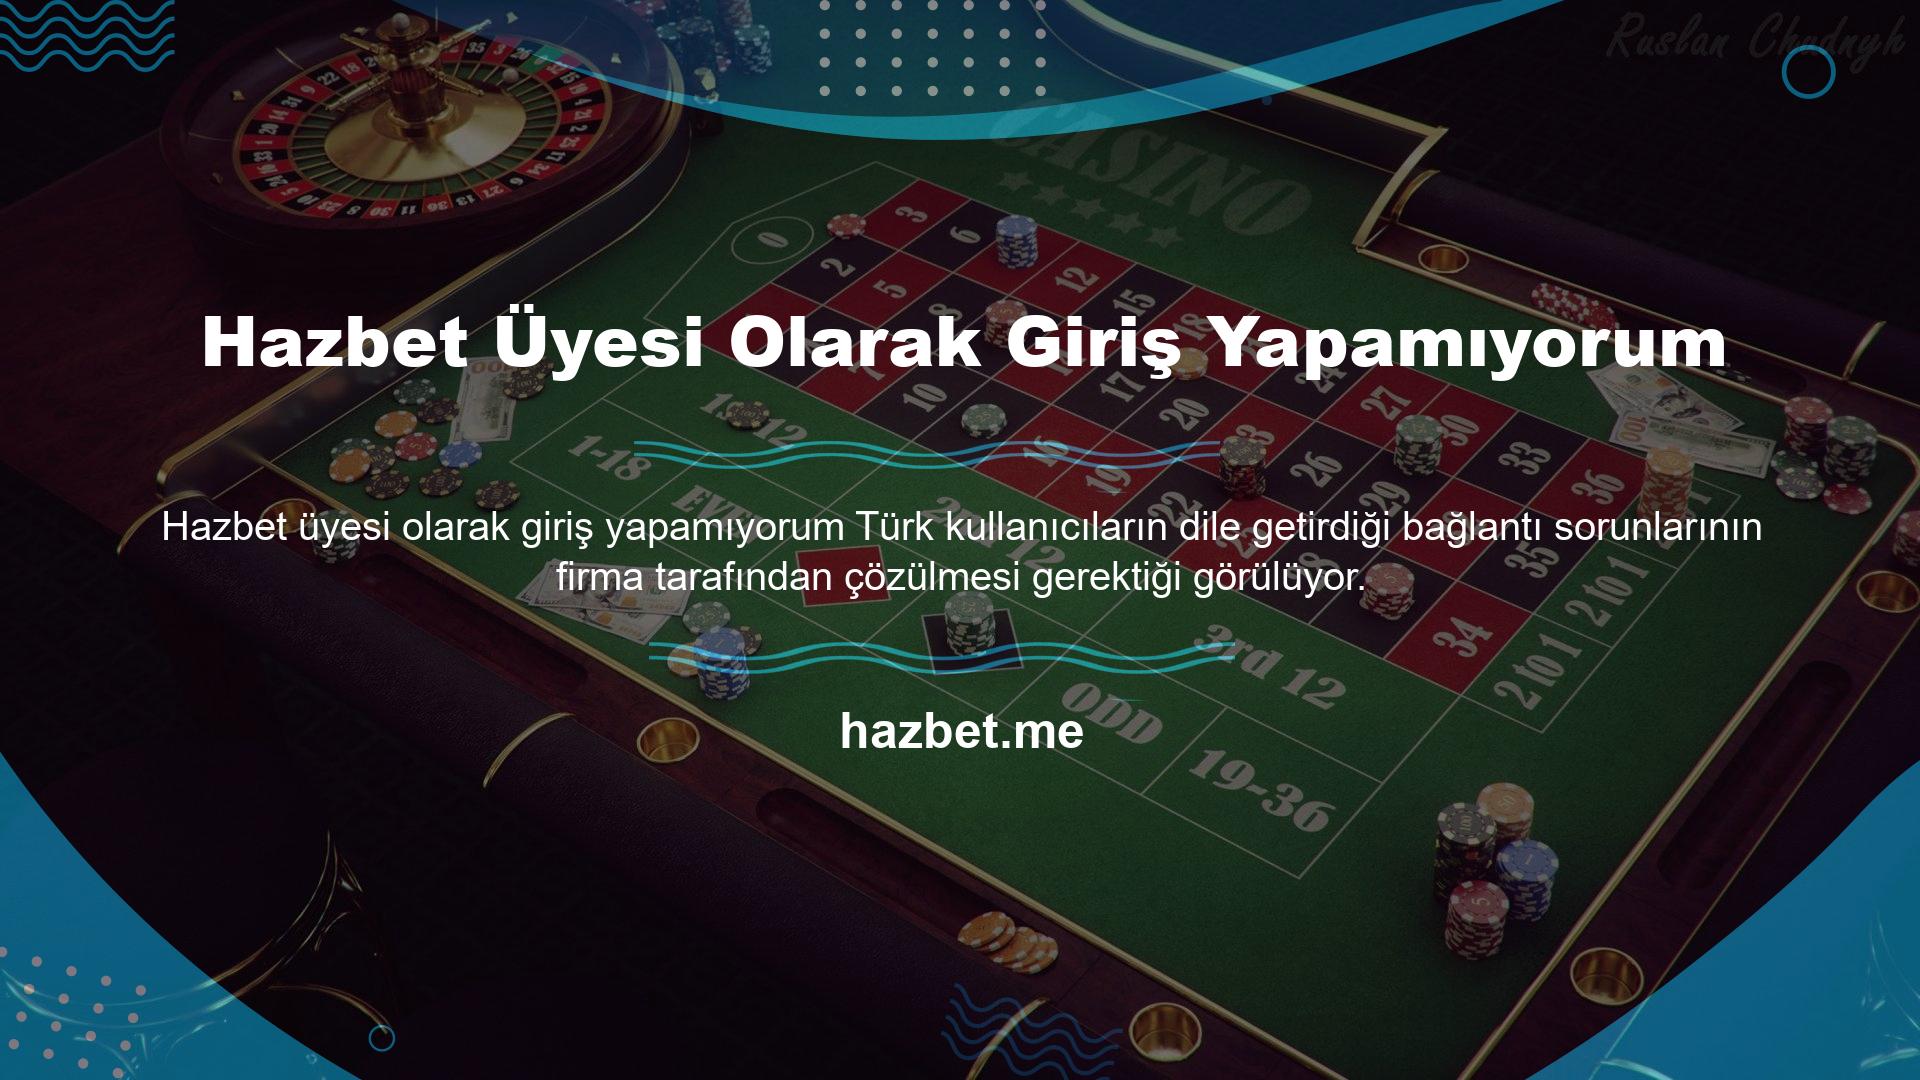 Hazbet web sitesindeki ticari faaliyetler Türk kanunlarına göre geçersizdir